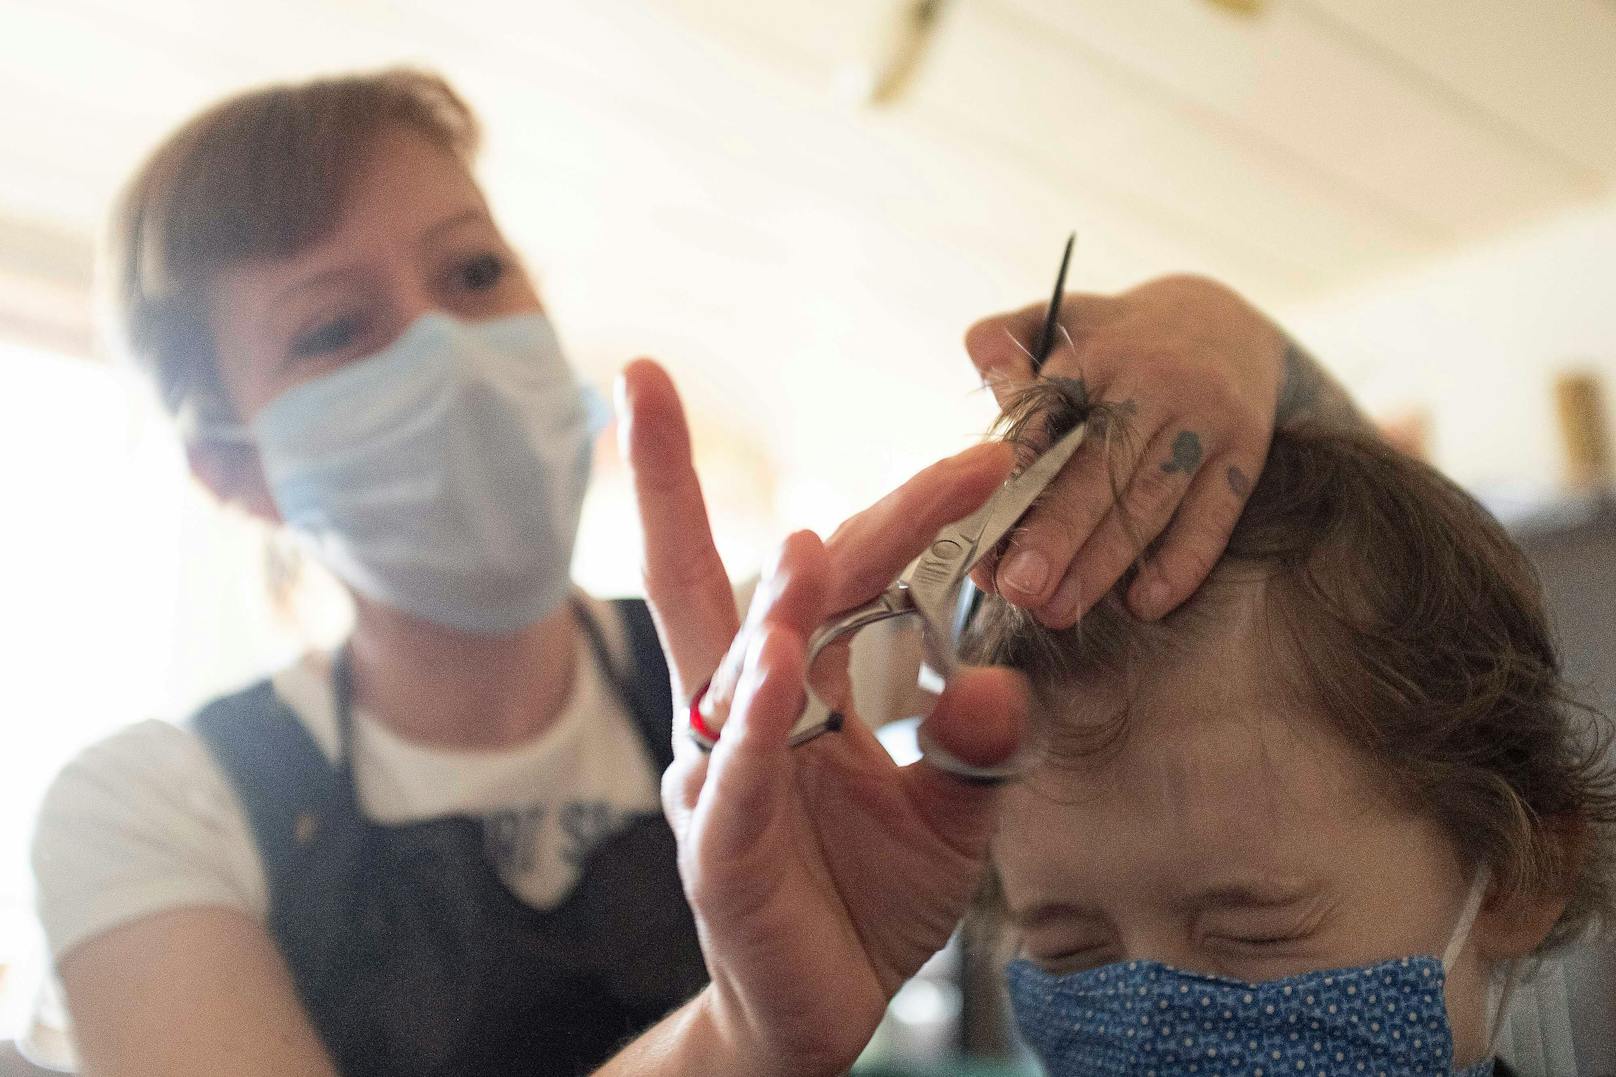 Friseure, wie alle anderen körpernahen Dienstleistungen, litten unter Pandemie